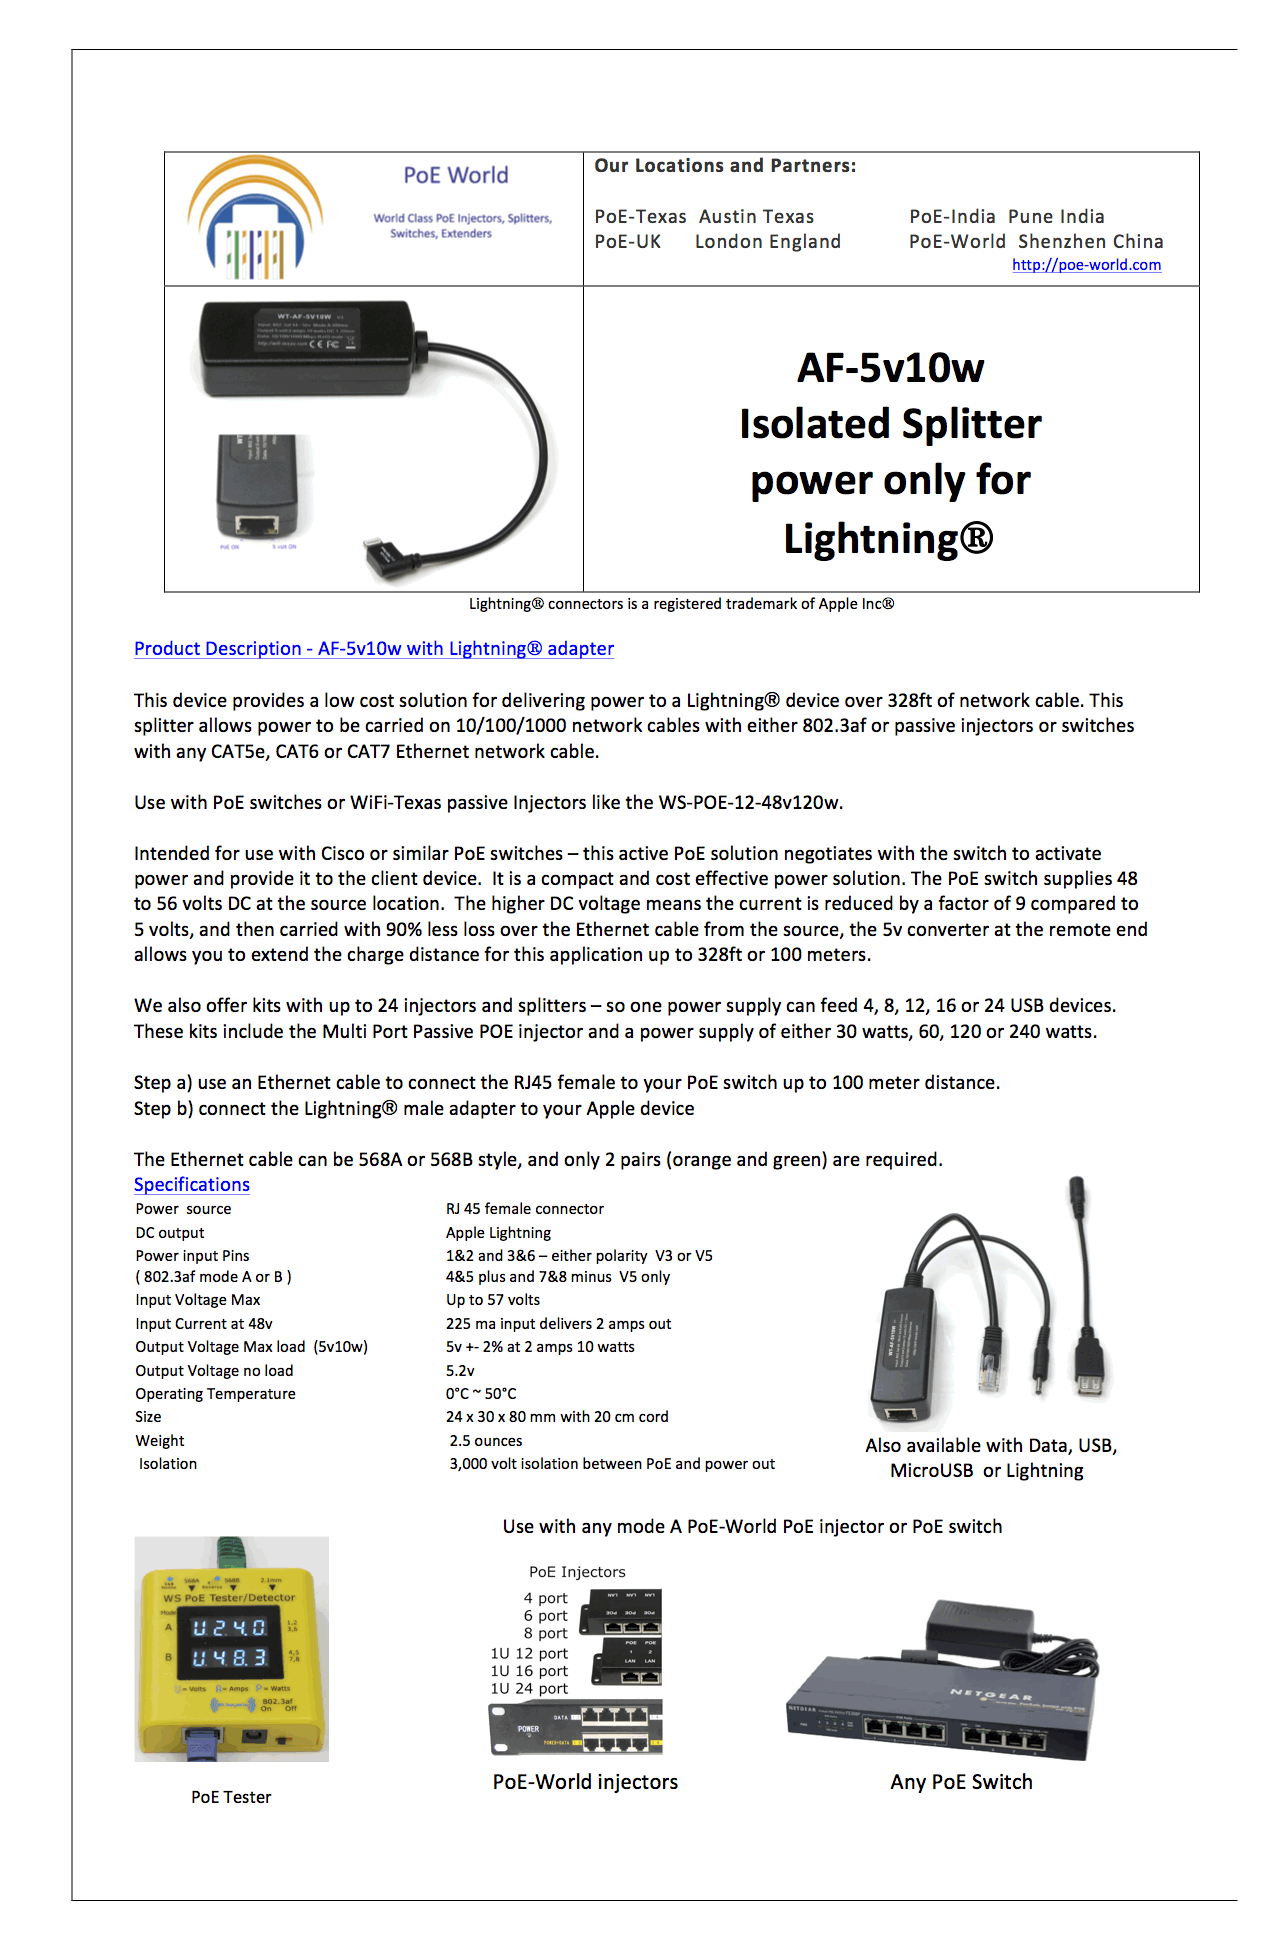 AF-5V10W-Lightning 5 Volt 10 Watt Lightning splitter / 802.3af PoE to 5 Volt Splitter for Lightning Devices (Power Only)